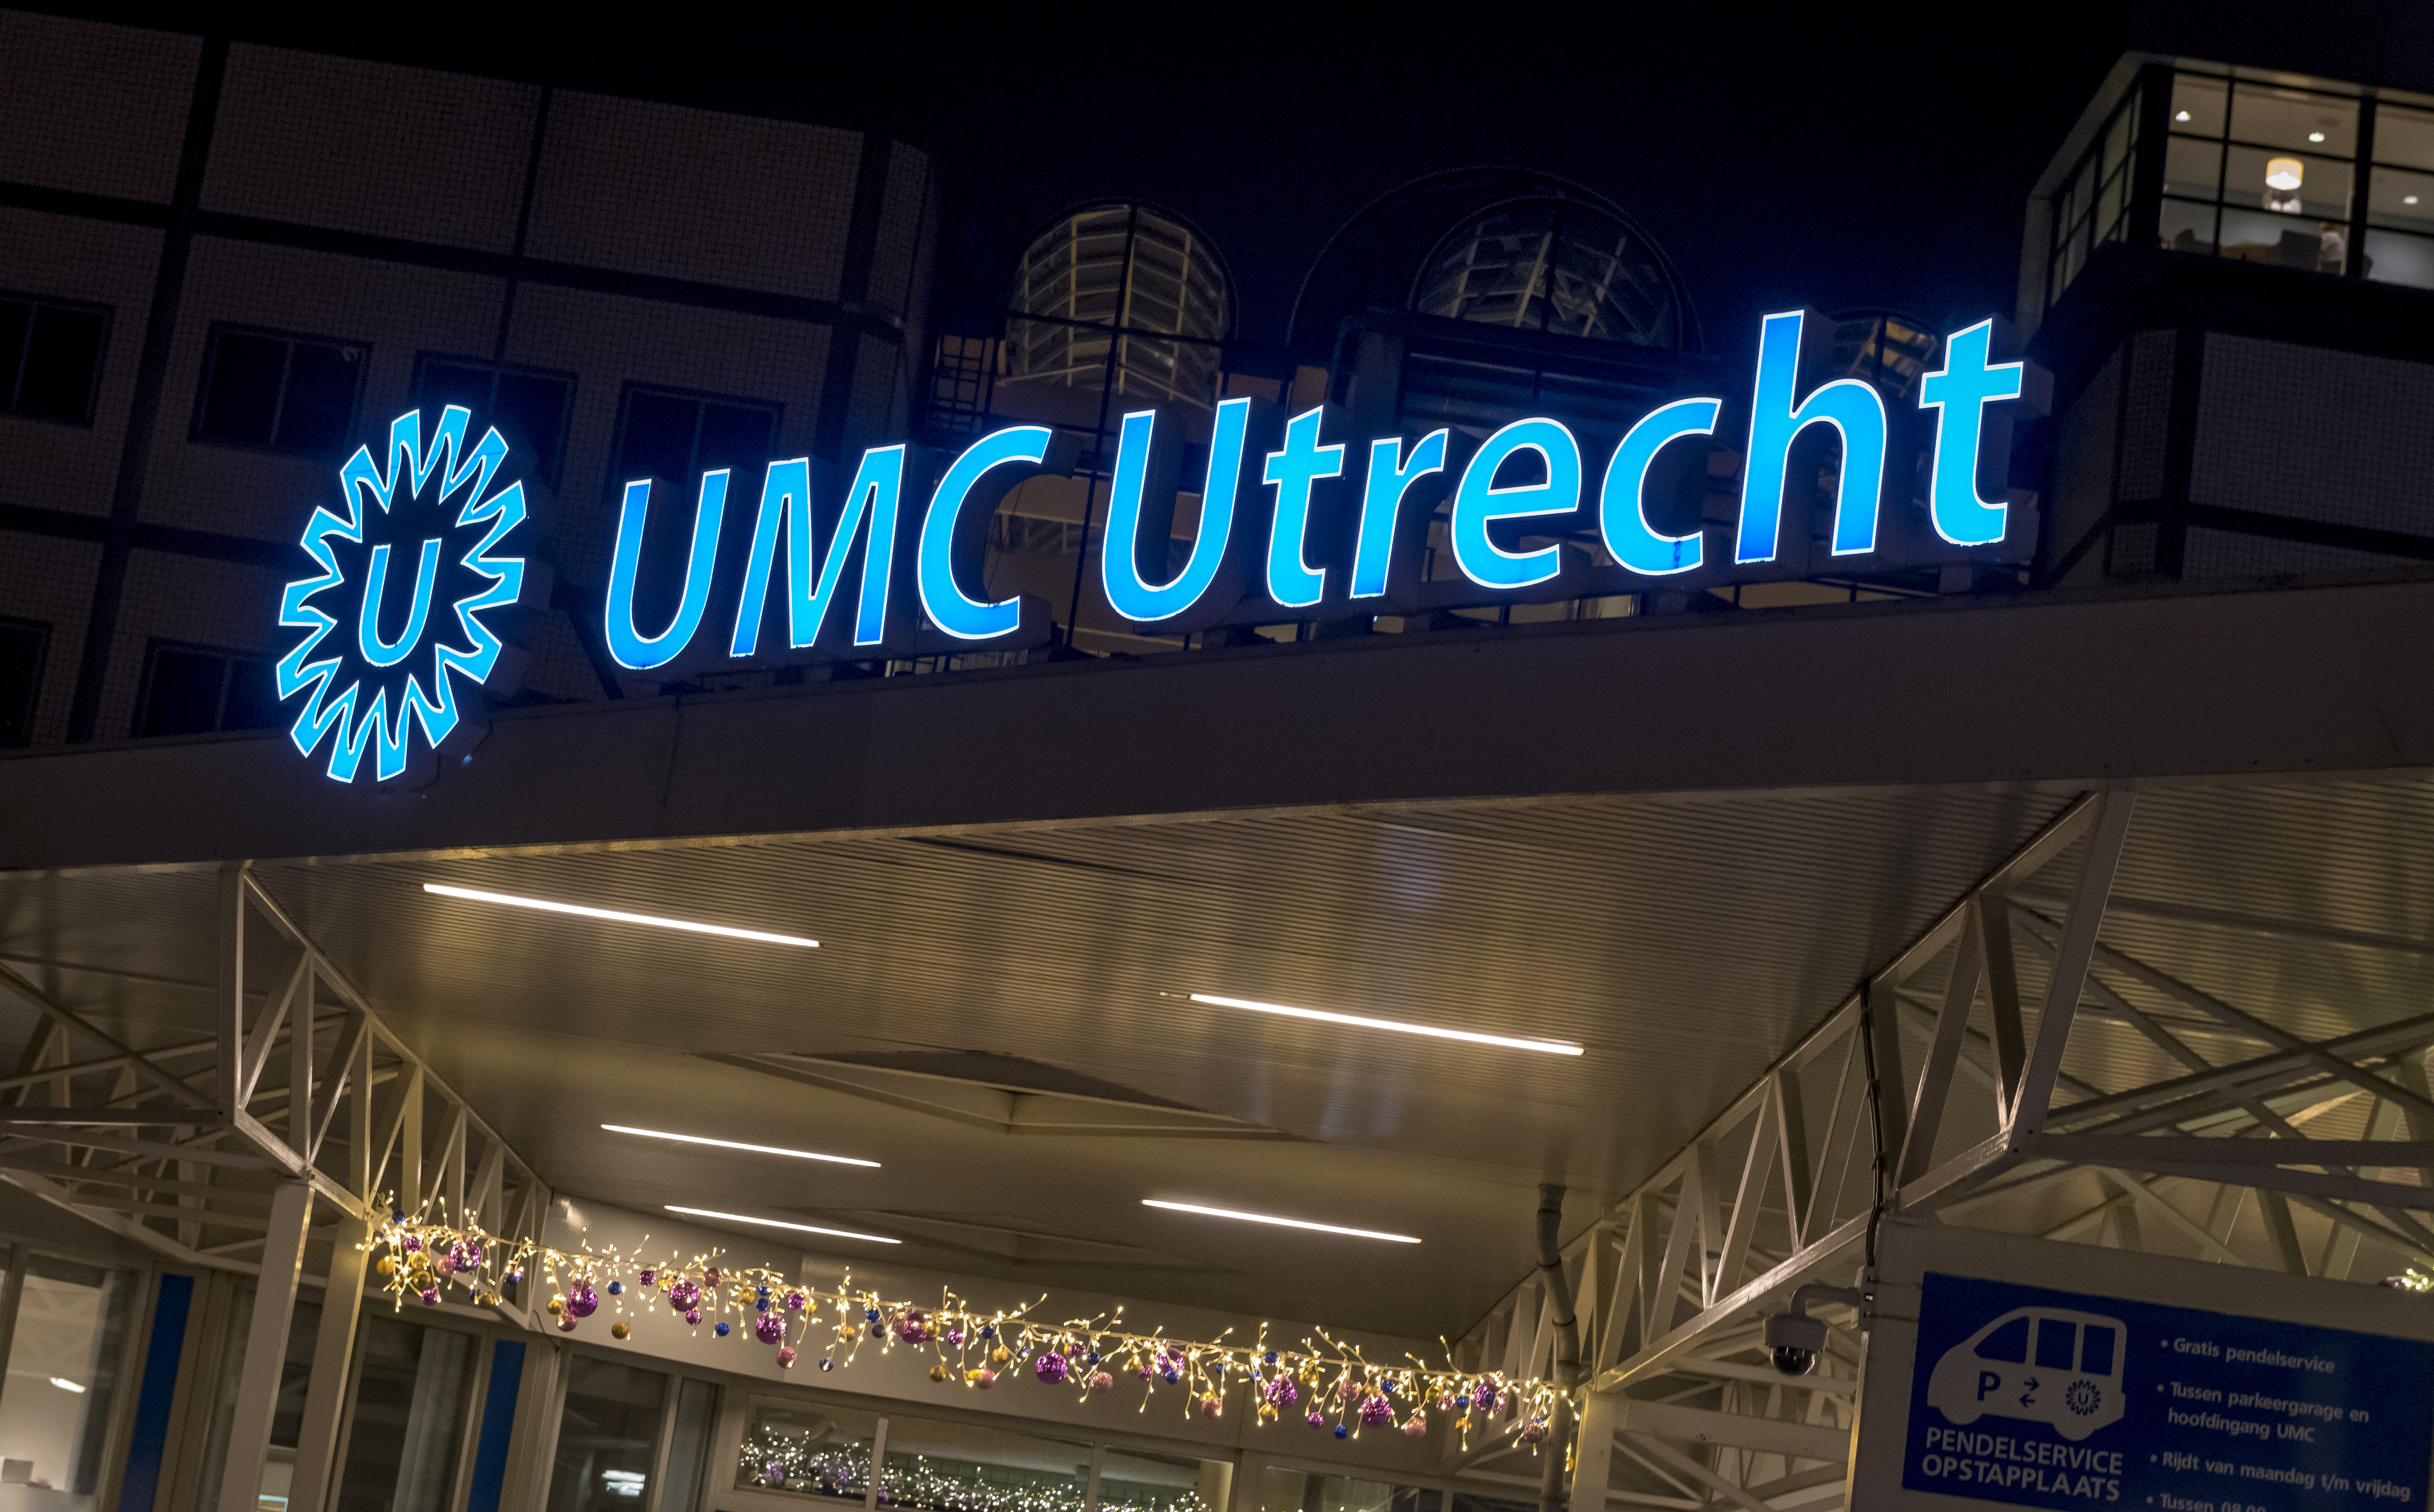 2016-12-27 18:13:58 UTRECHT - Exterieur van het Universitair Medisch Centrum (UMC) in Utrecht. Het ziekenhuis onderzoekt of er een procedurefout is gemaakt in het IVF-laboratorium. ANP LEX VAN LIESHOUT